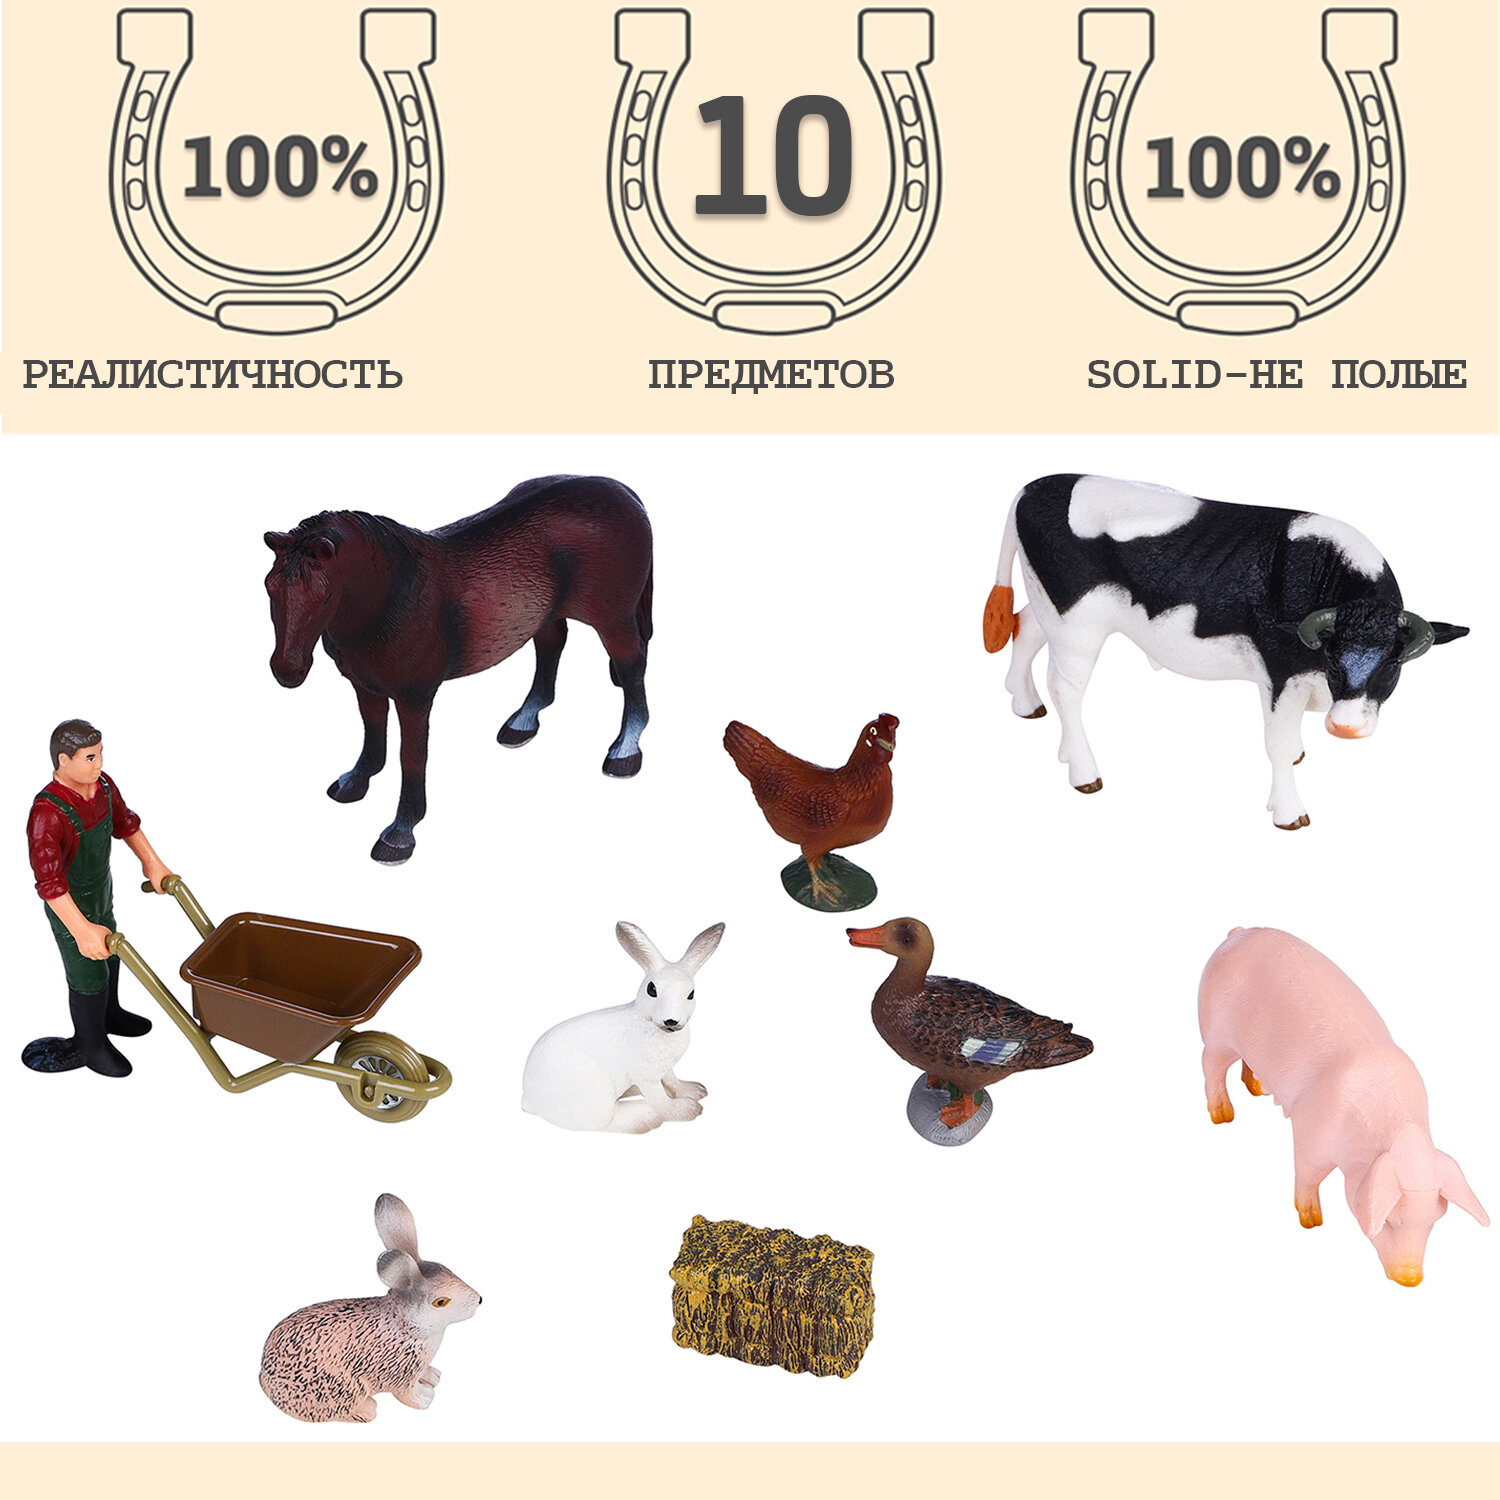 Фигурки животных серии "На ферме": Лошадь, корова, свинья, 2 кролика, утка, курица, фермер, тележка с сеном (набор из 10 предметов)